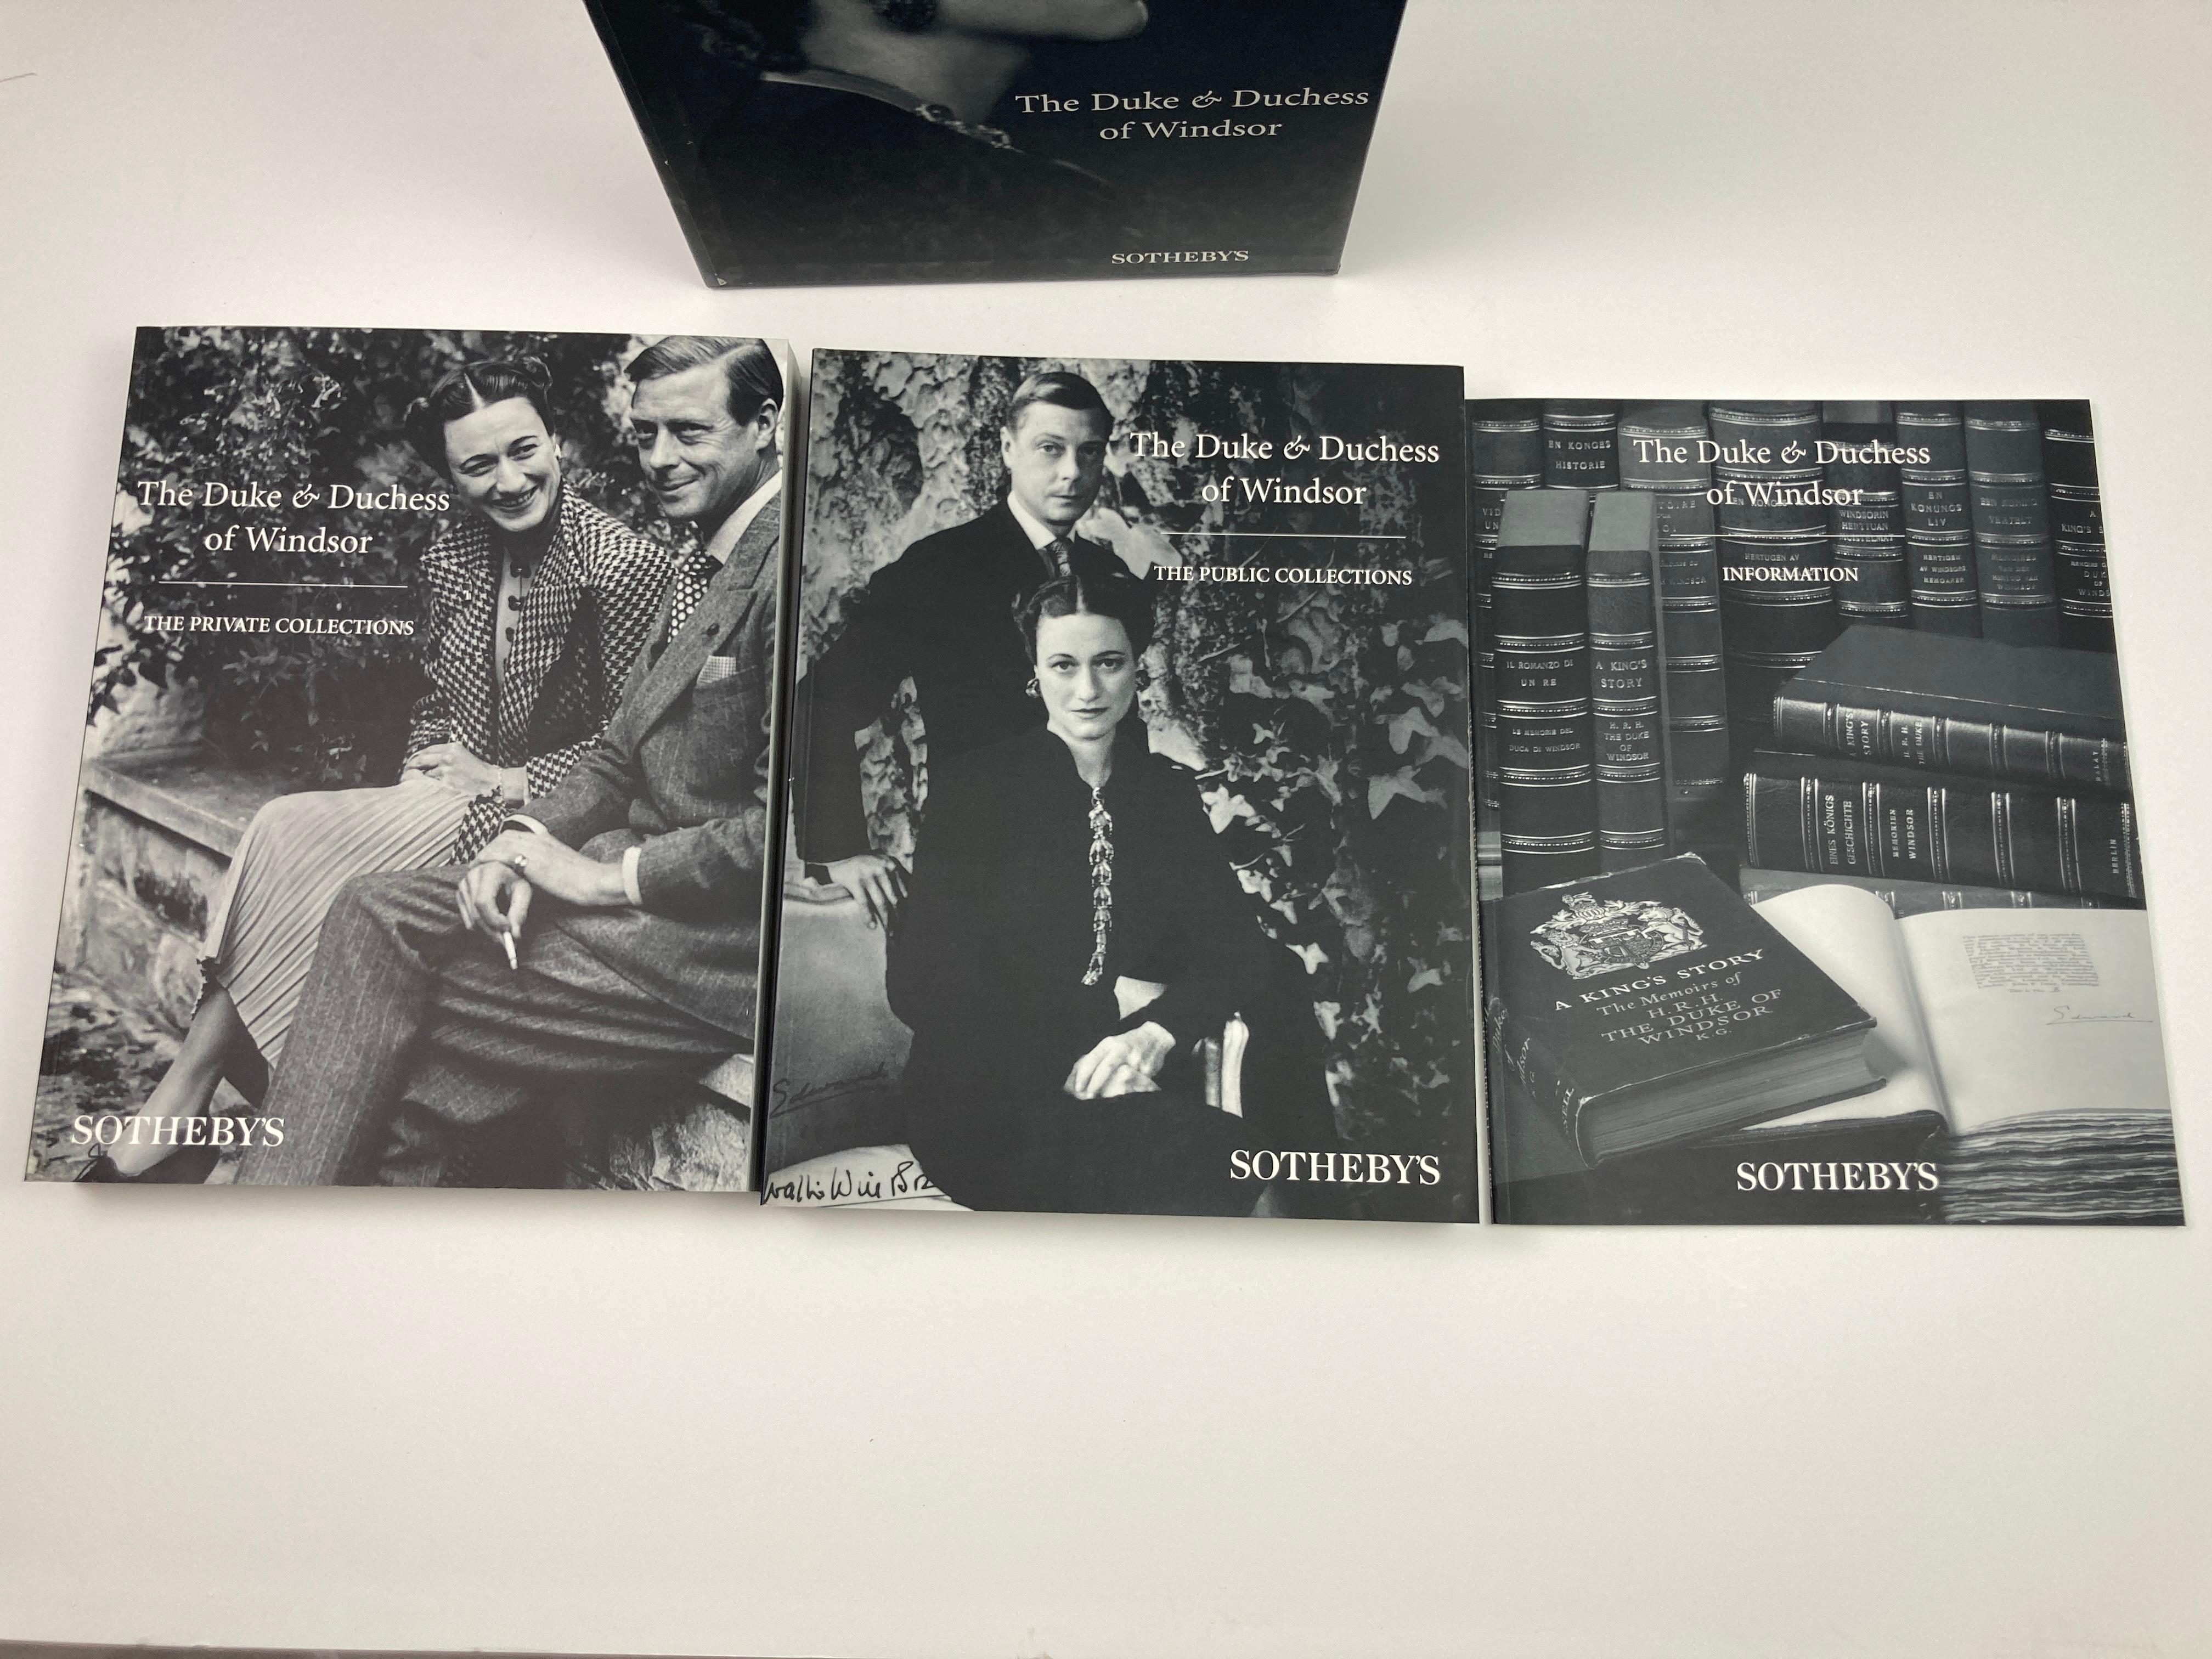 The Duke and Duchess of Windsor Auction Sotheby's Books Catalogs in Slipcase Box (Le duc et la duchesse de Windsor, ventes aux enchères, catalogues de livres de Sotheby's dans une boîte) en vente 4